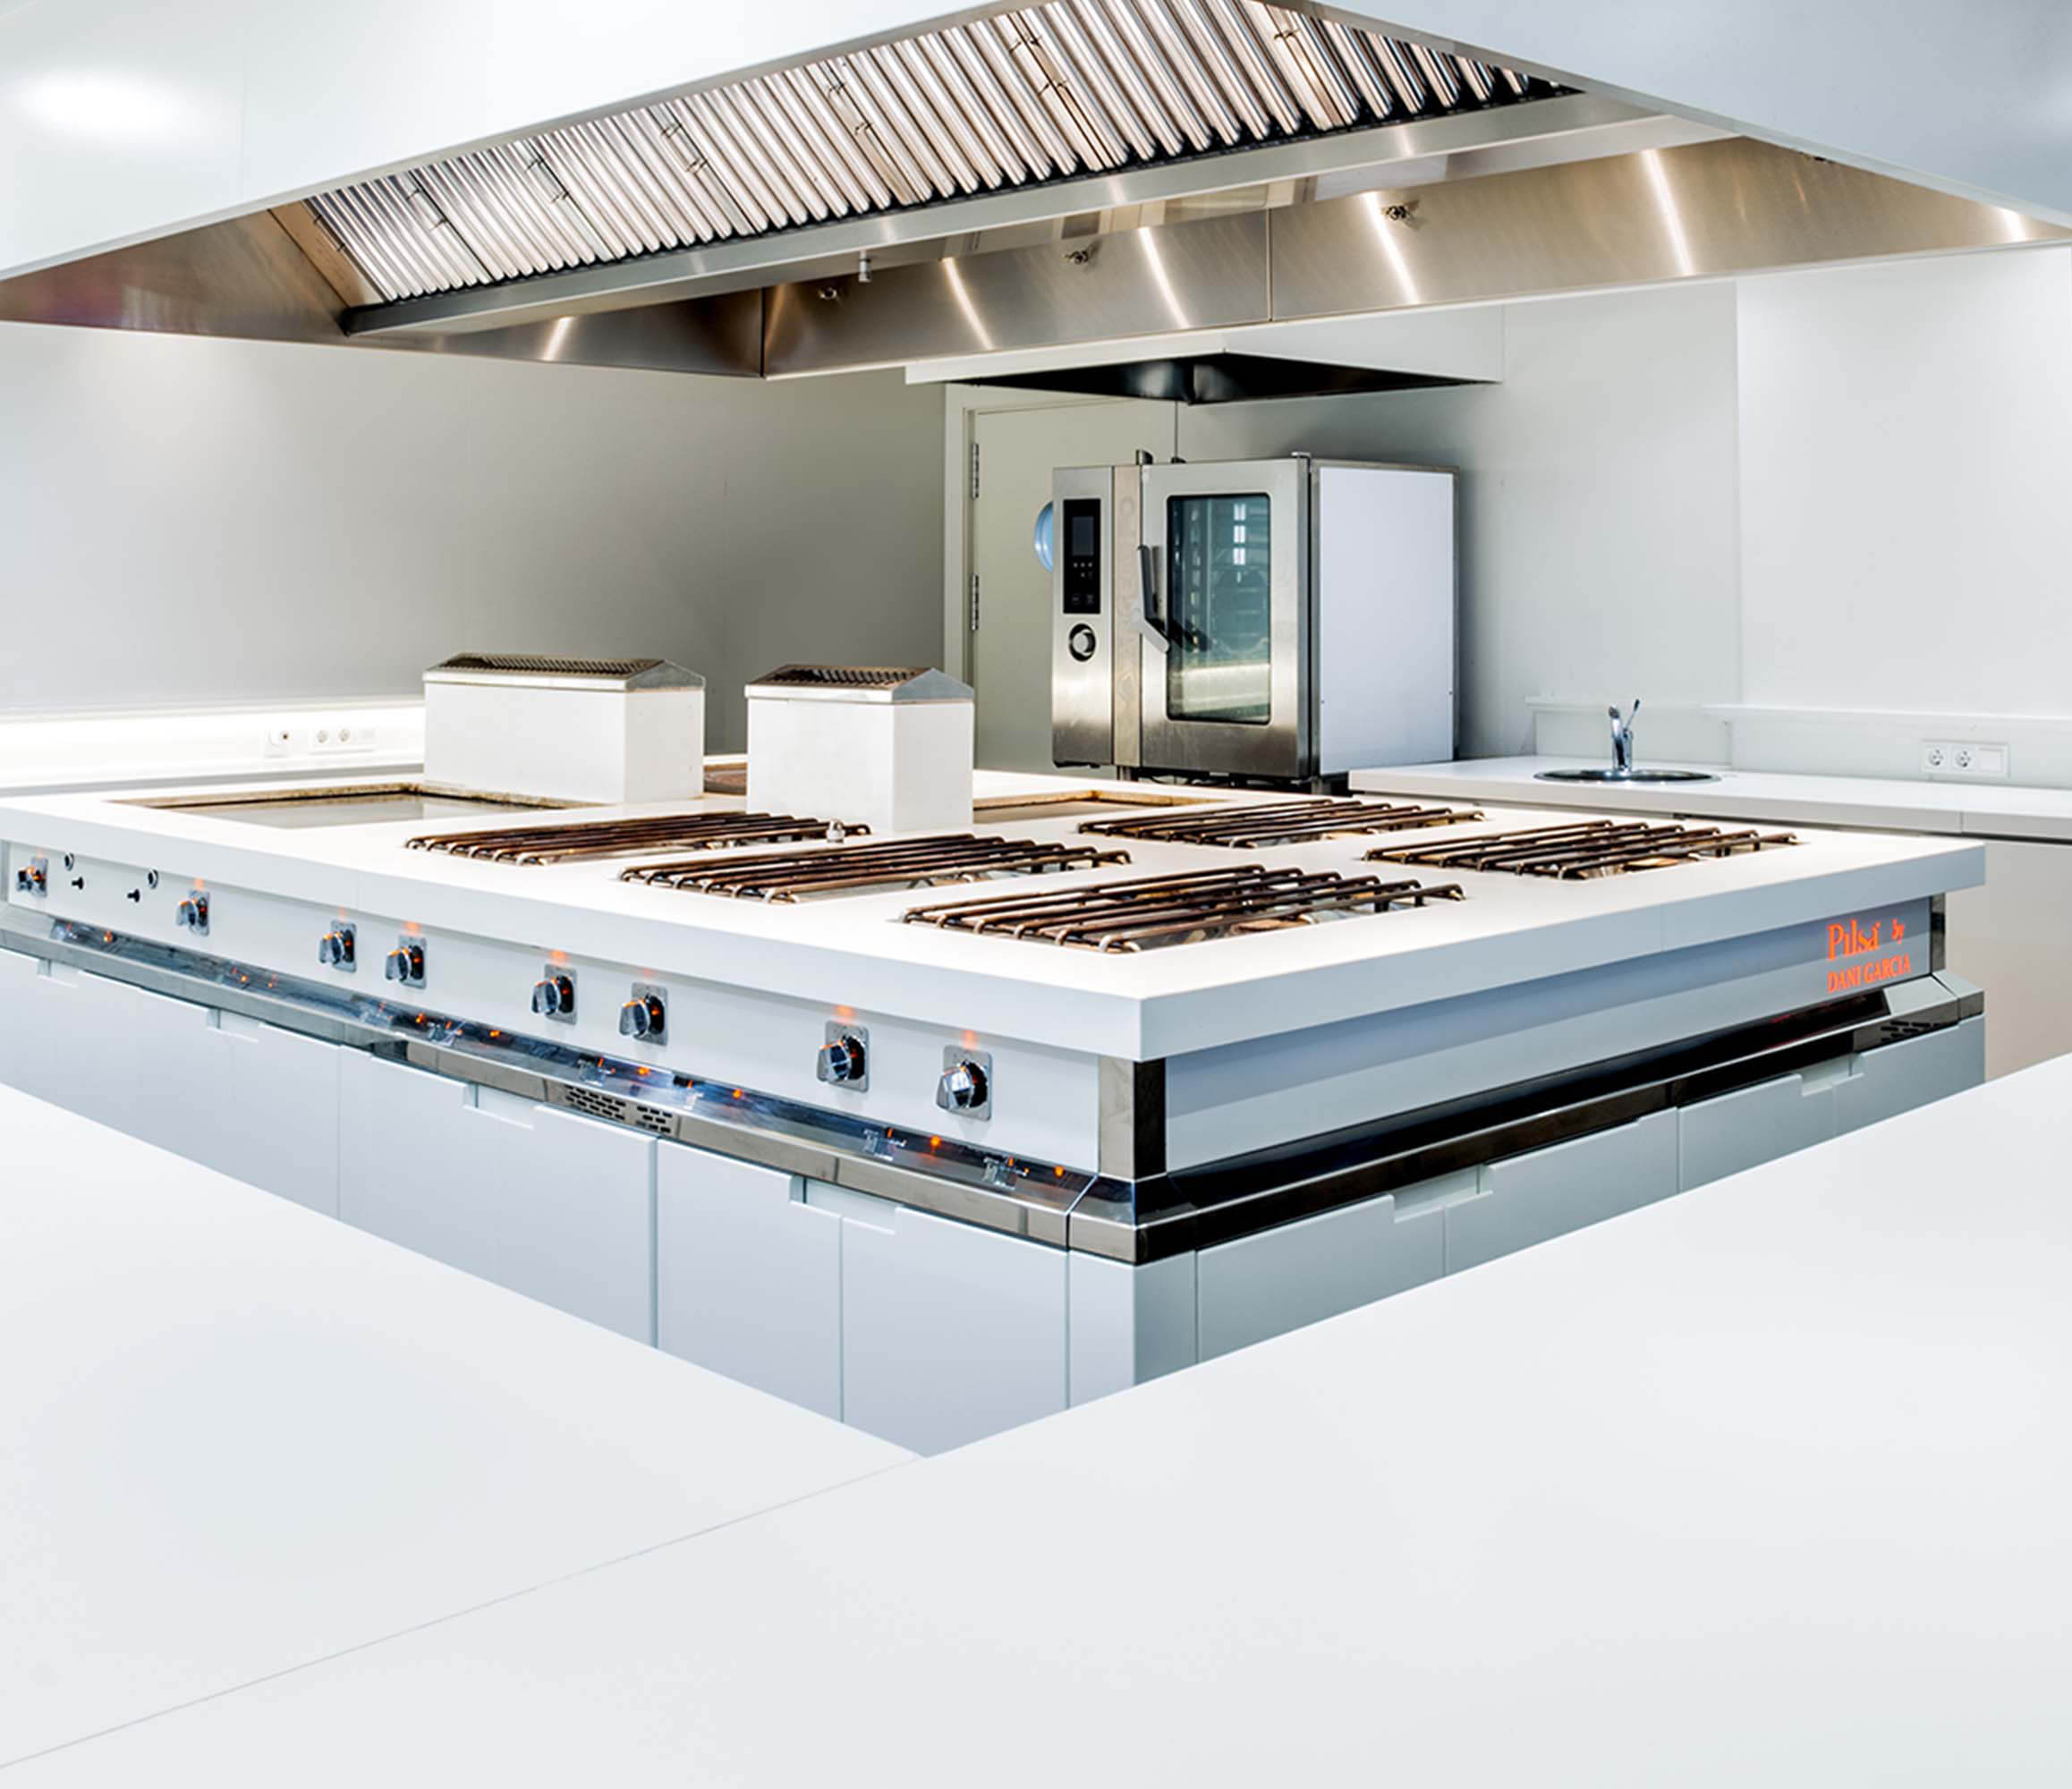 Image of Home 1158x1000 3 Professional KitchenArchitectura in Domov Cosentino - Cosentino